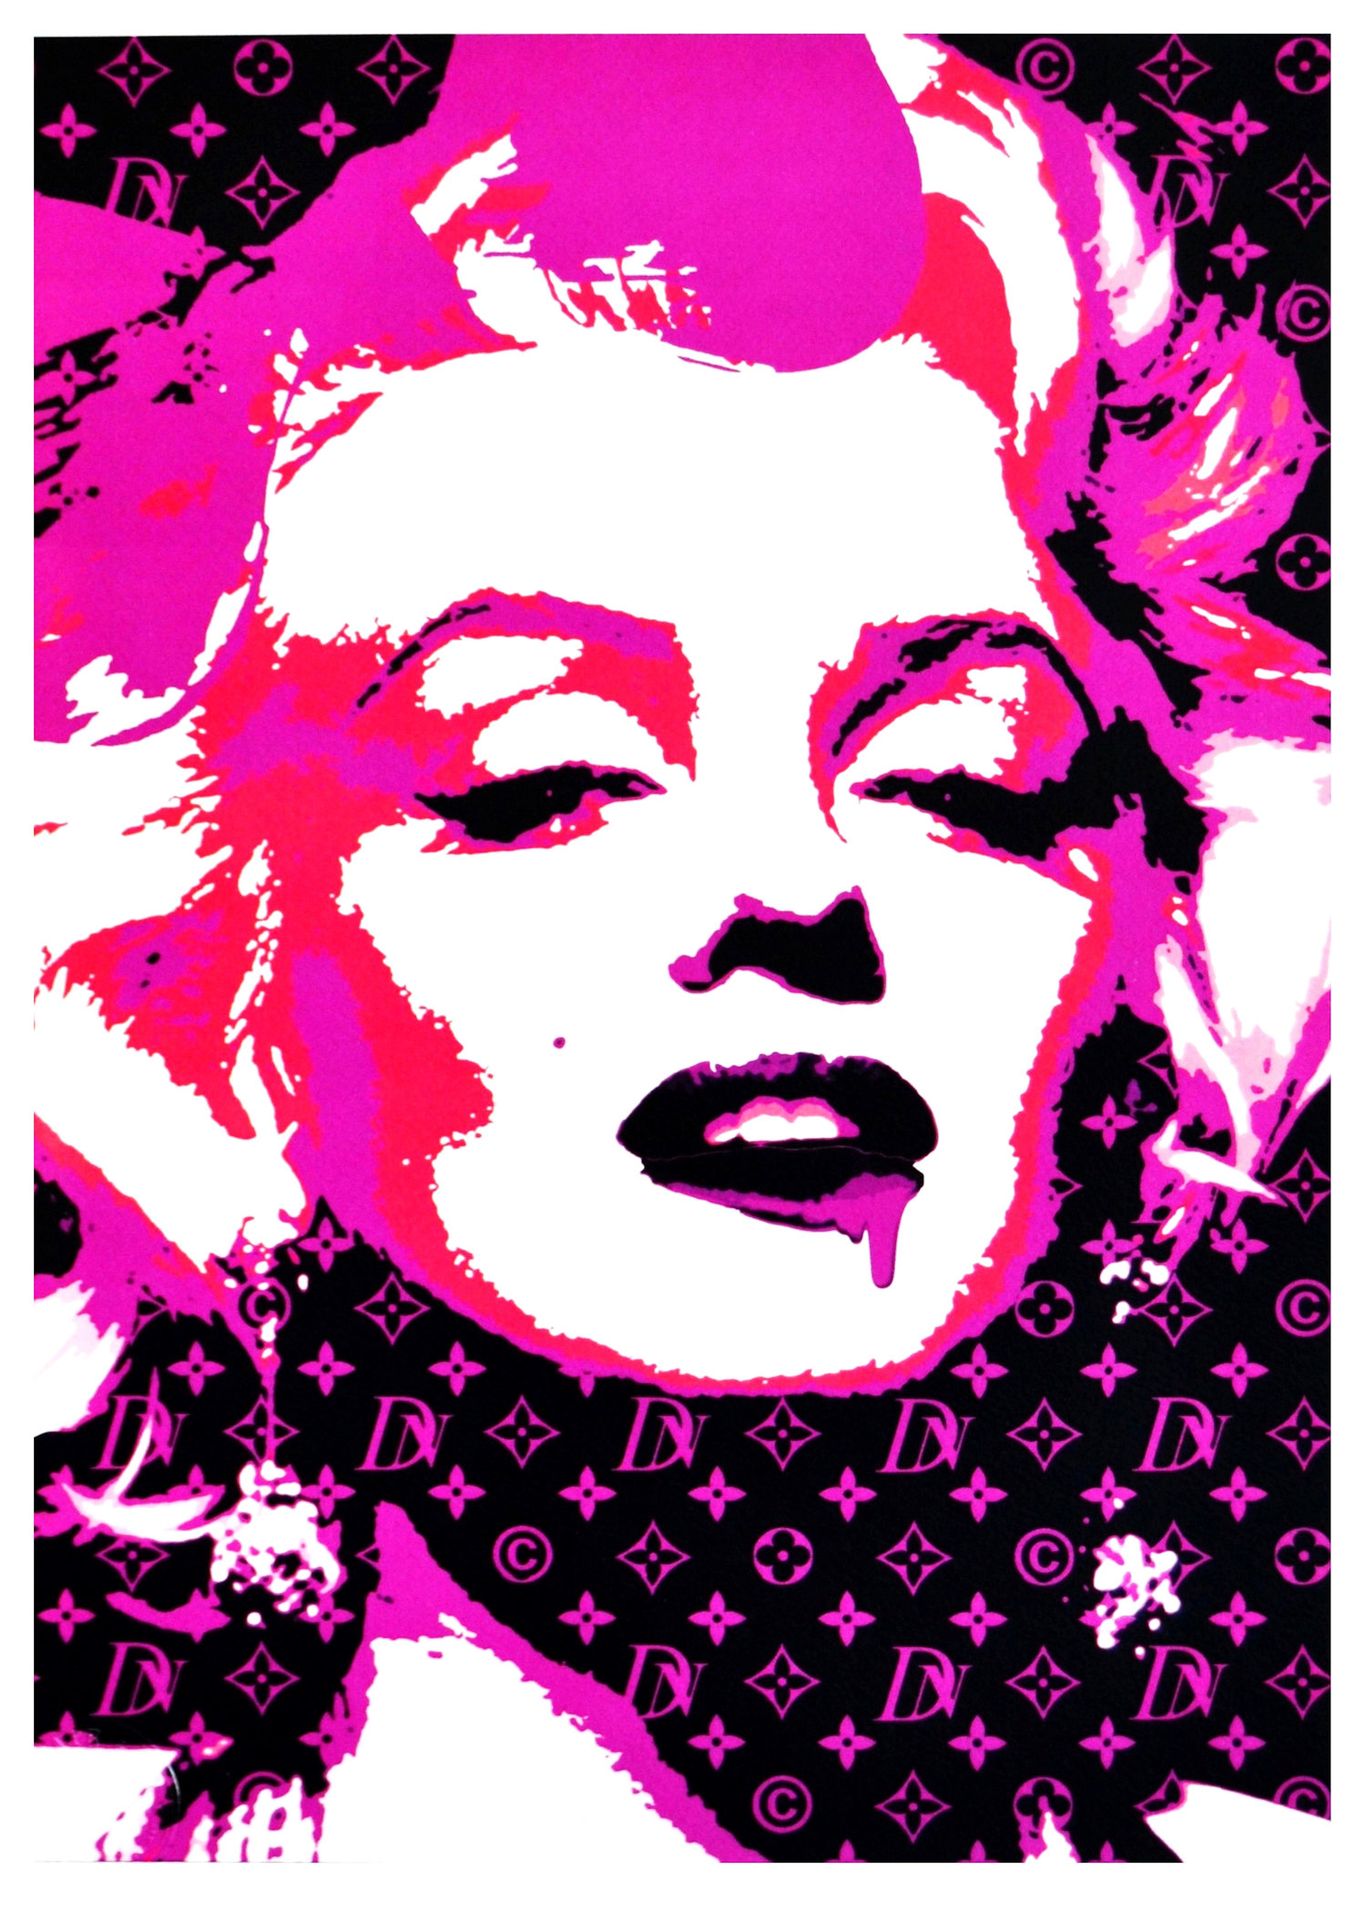 Death NYC 纽约市的死亡

梦露粉色光芒2015

丝网印刷。

限量发行100张印刷品。

尺寸：45 x 32 cm - 艺术纸300g

由艺术家&hellip;